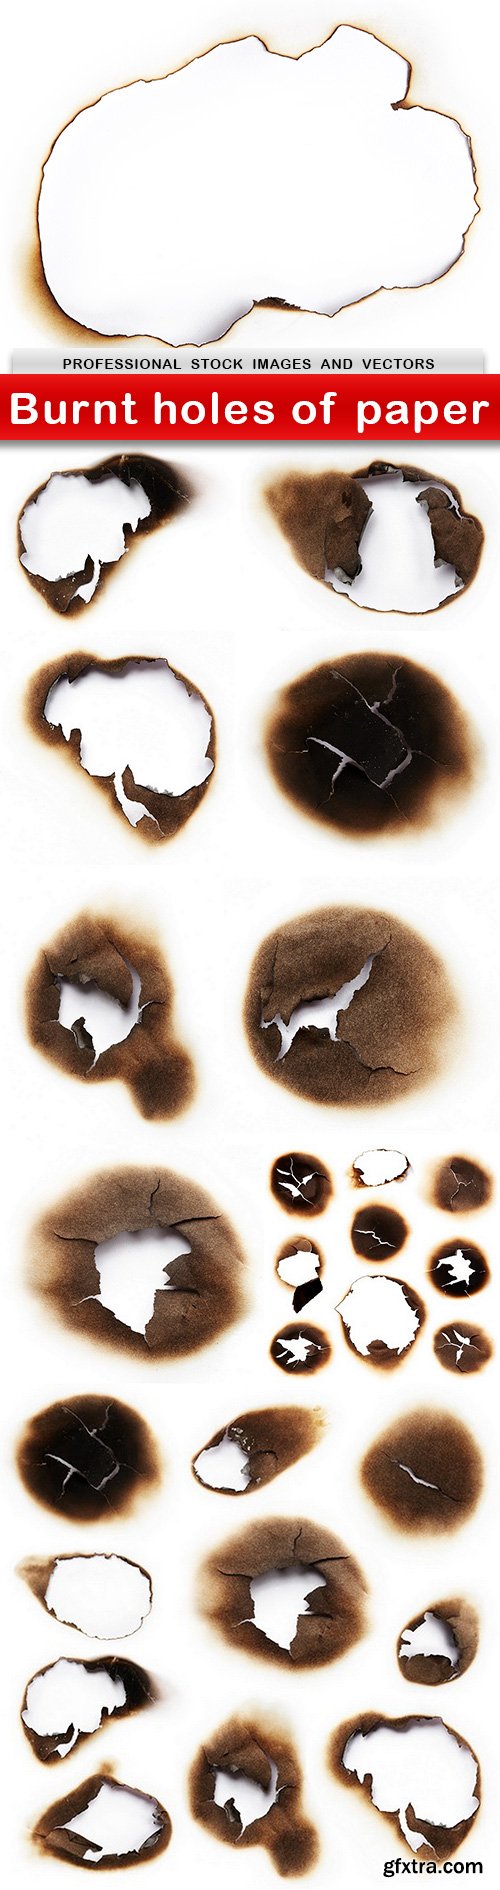 Burnt holes of paper - 10 UHQ JPEG